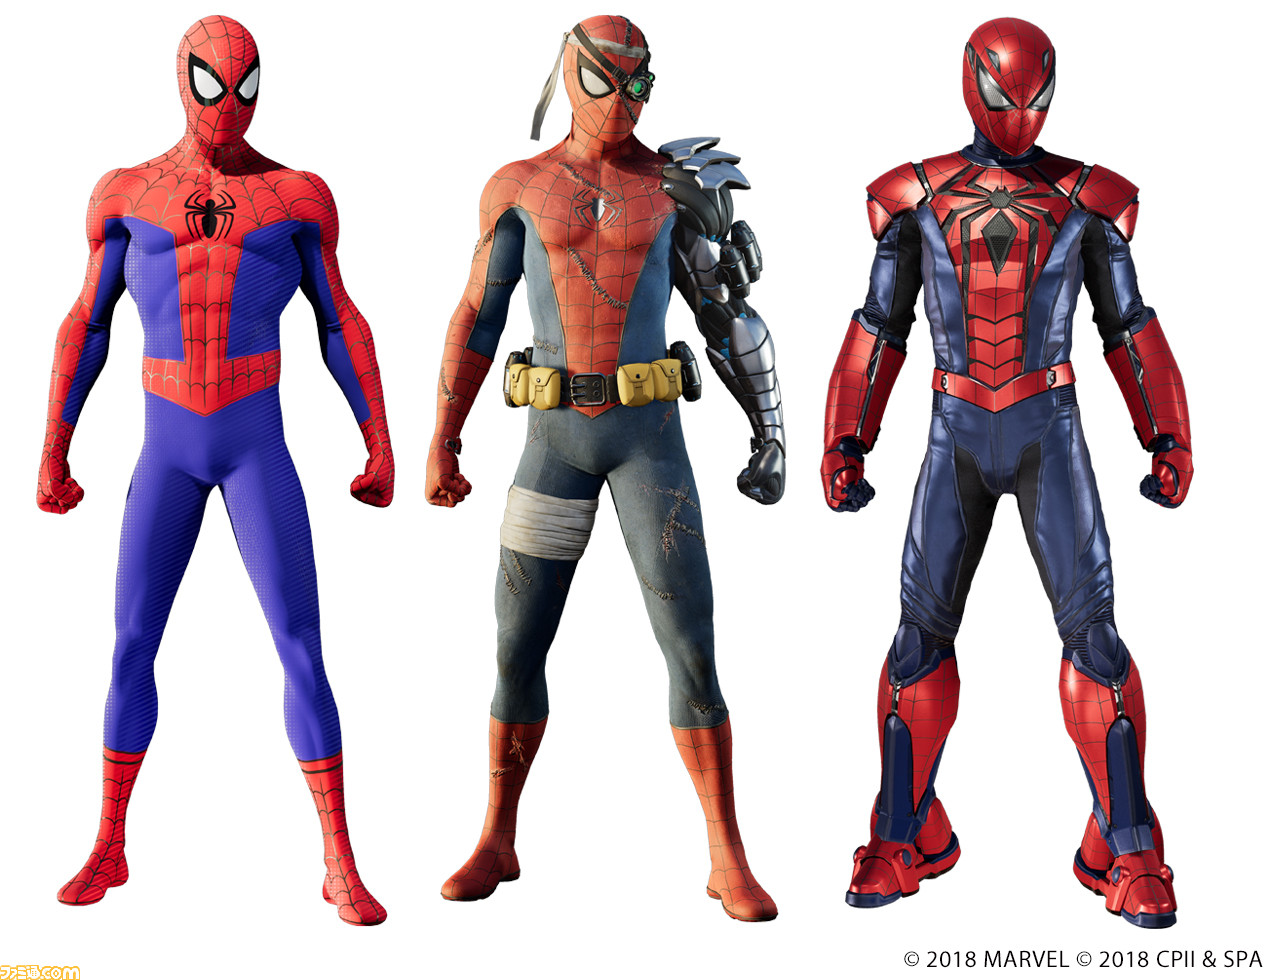 Marvel S Spider Man 追加dlc第3弾 白銀の系譜 が12月21日に配信決定 新作映画に登場するスーツなど 新たに3種類のスーツが入手可能に ファミ通 Com